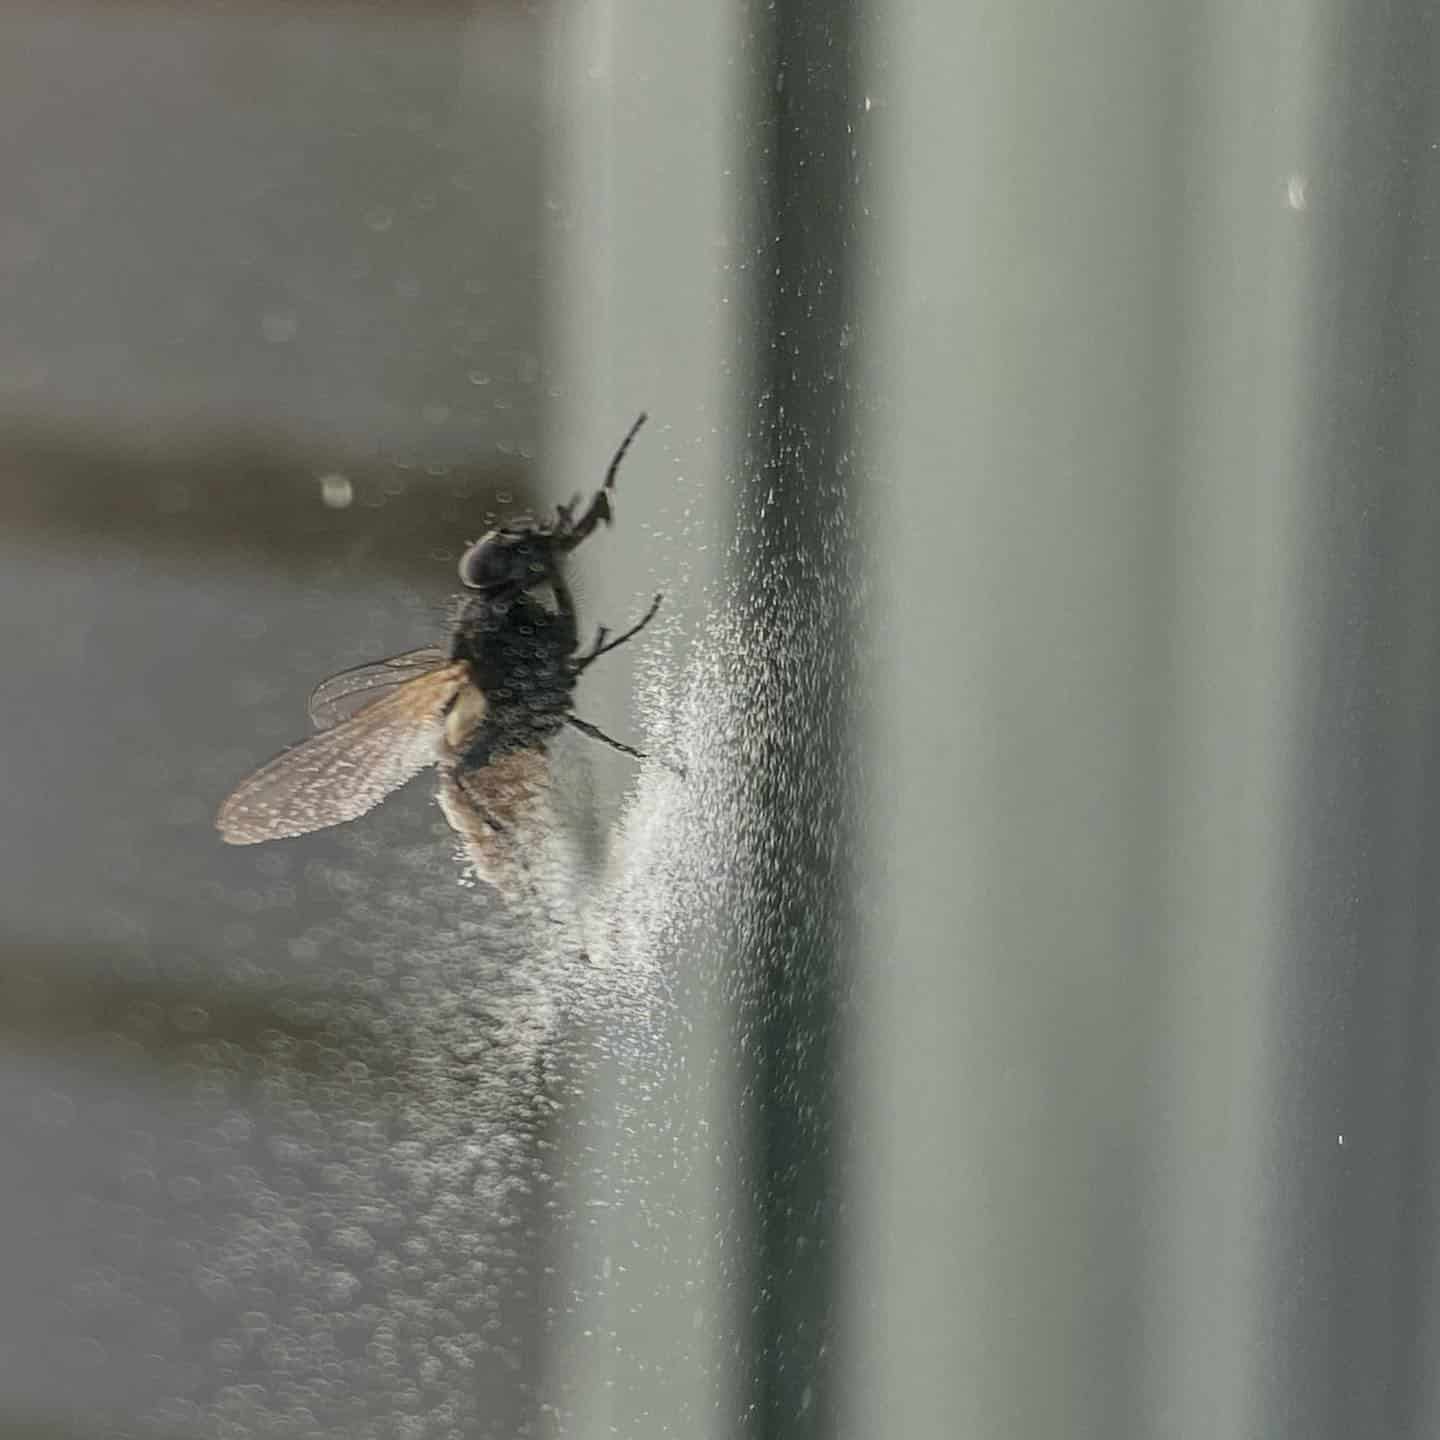 Así se ha quedado esta mosca tras quedarse atrapada entre el cristal y la persiana durante una noche otoñal leonesa 🧐 #leonesp #otoño #insectos #naturaleza #ciudad